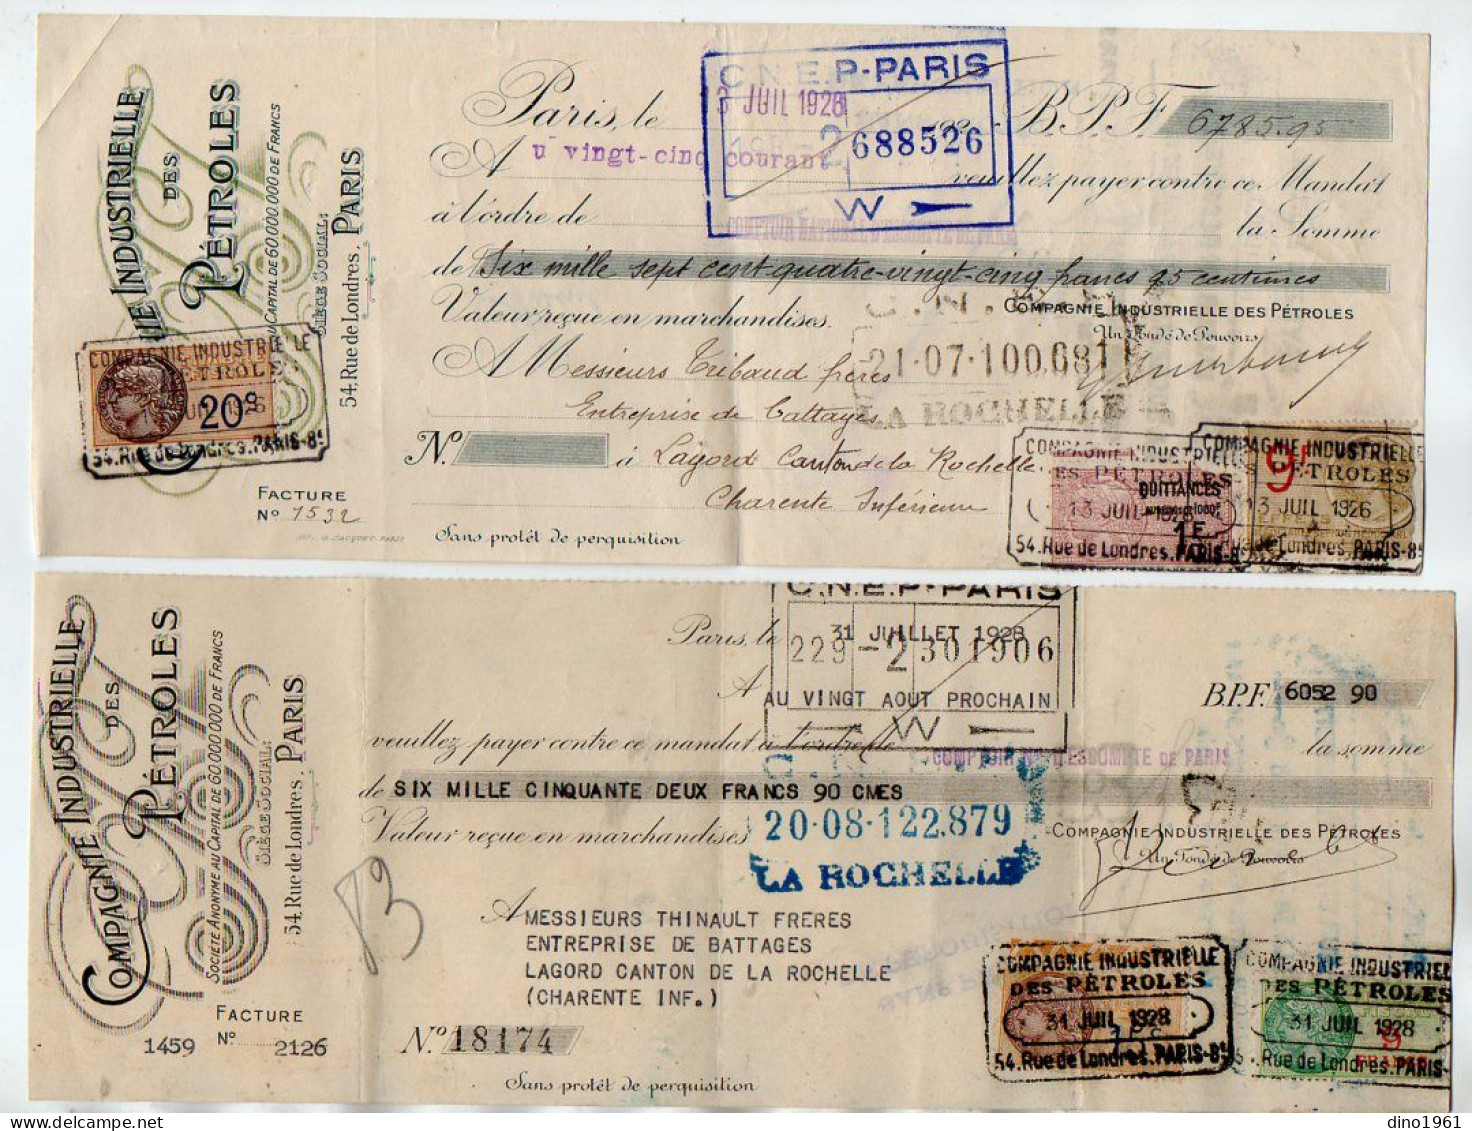 VP22.241 - 1926 / 28 - Lettre De Change - Compagnie Industrielle Des Pétroles à PARIS - Cambiali